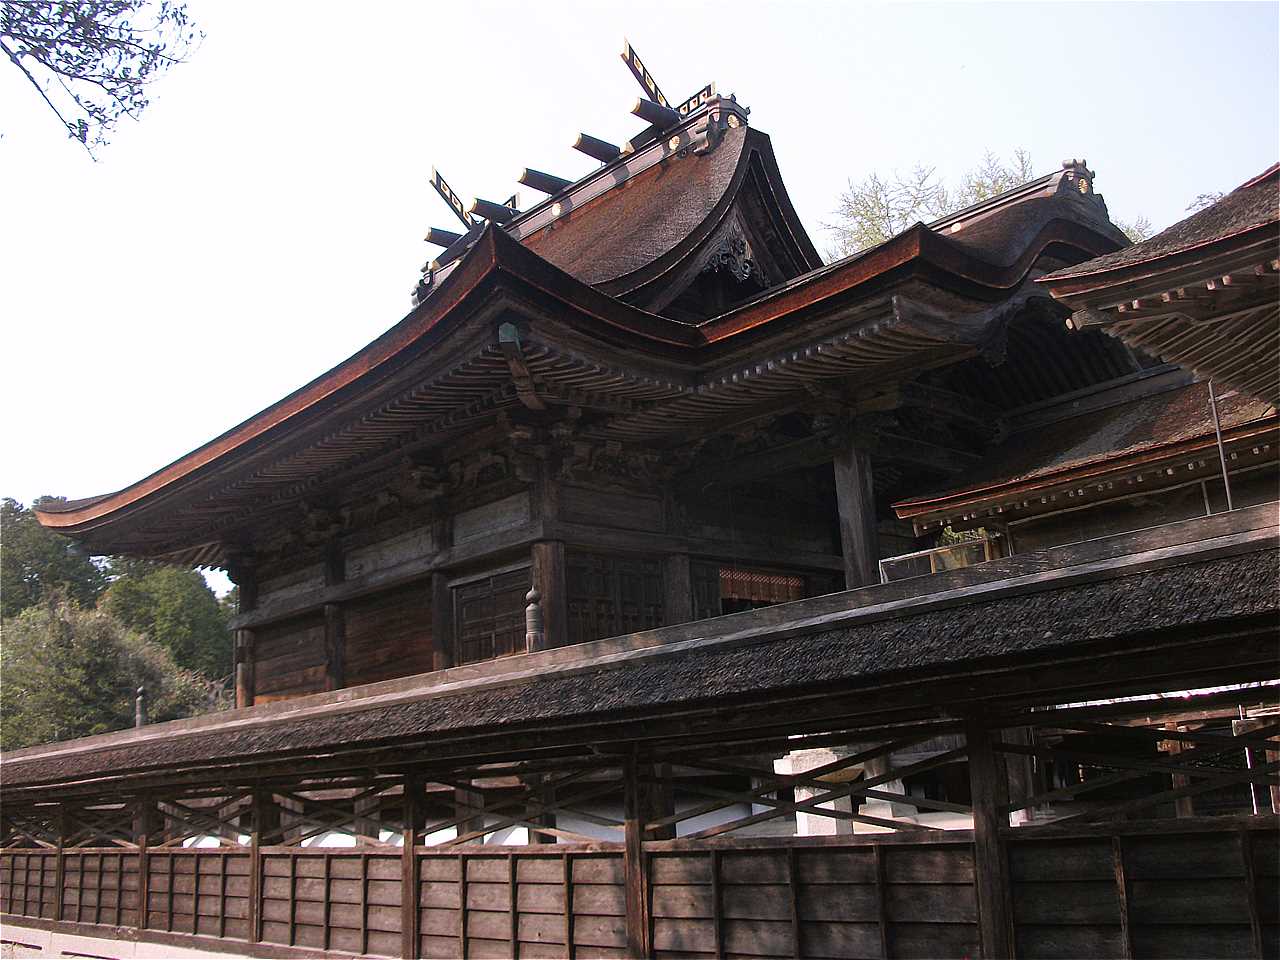 中山神社